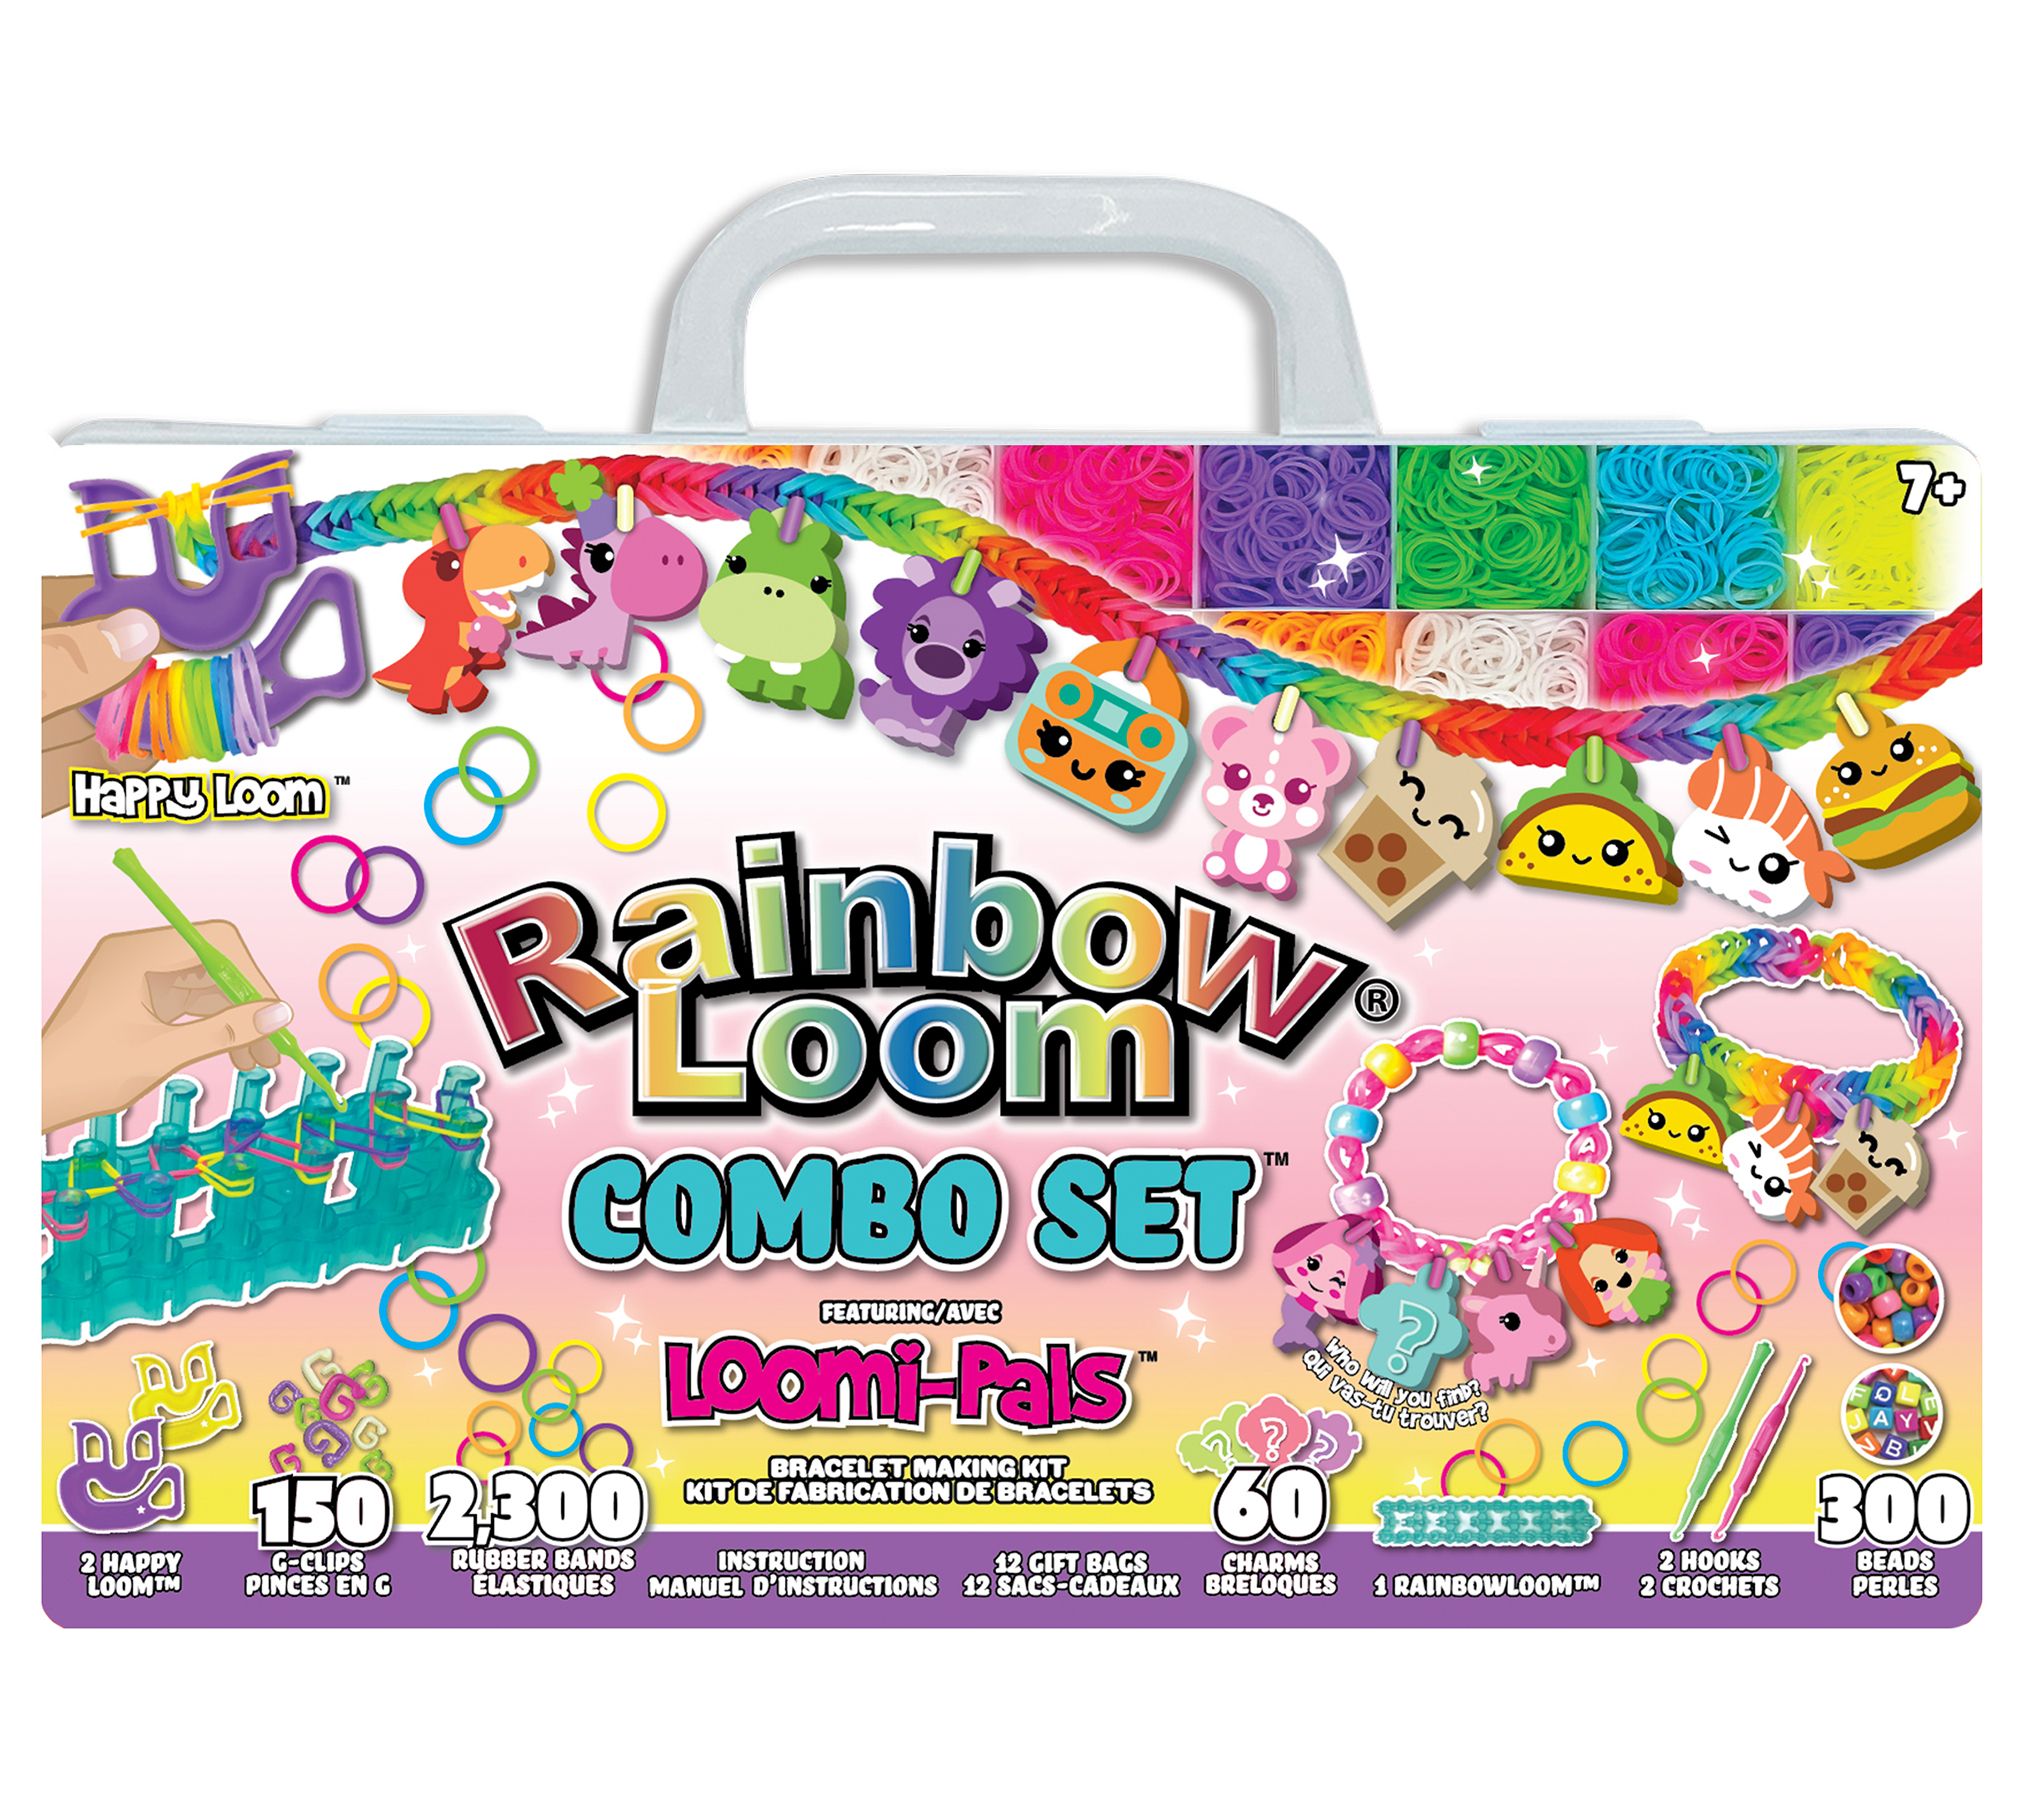 Rainbow Loom Bff Mega Button Set